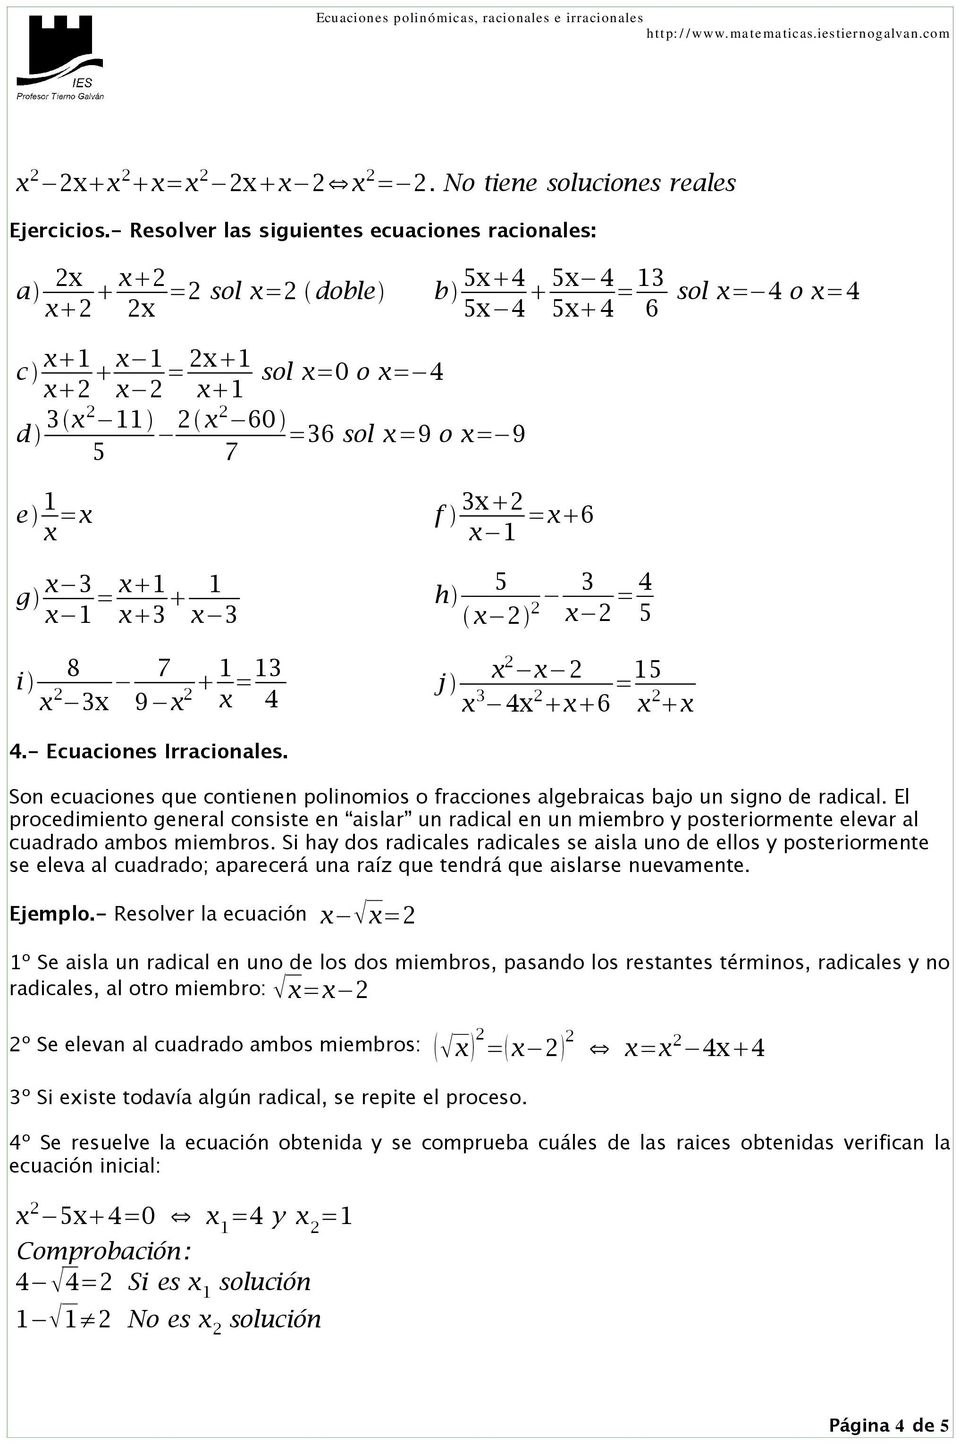 x =9 o x = 9 7 e 1 x =x g x 3 x 1 = x 1 x 3 1 x 3 8 i x 2 3x 7 9 x 1 2 x =13 4 f 3x 2 x 1 =x 6 5 h 3 x 2 2 x 2 = 4 5 x 2 x 2 j x 3 4x 2 x 6 =15 x 2 x 4.- Ecuaciones Irracionales.